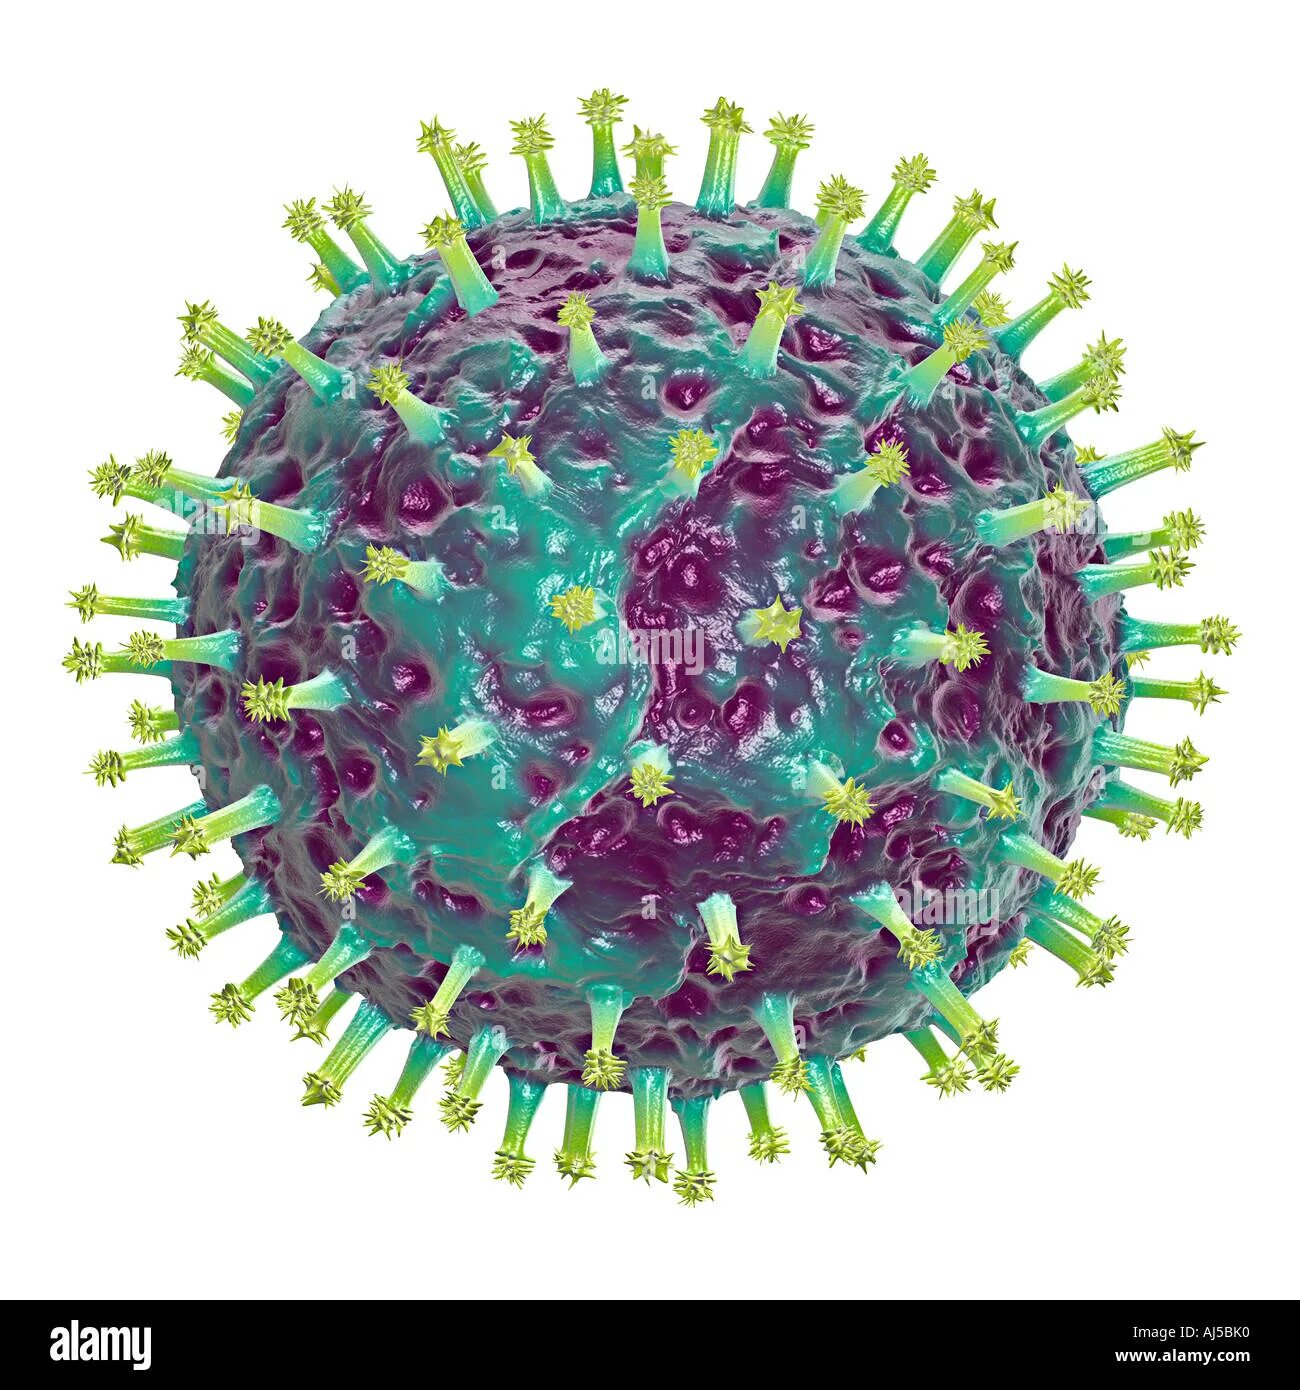 Респираторные вирусы гриппа. Респираторно-синцитиальный вирус человека. Респираторно- синцитиальный вирус резистентность. Вирус гриппа. Изображение вируса гриппа.